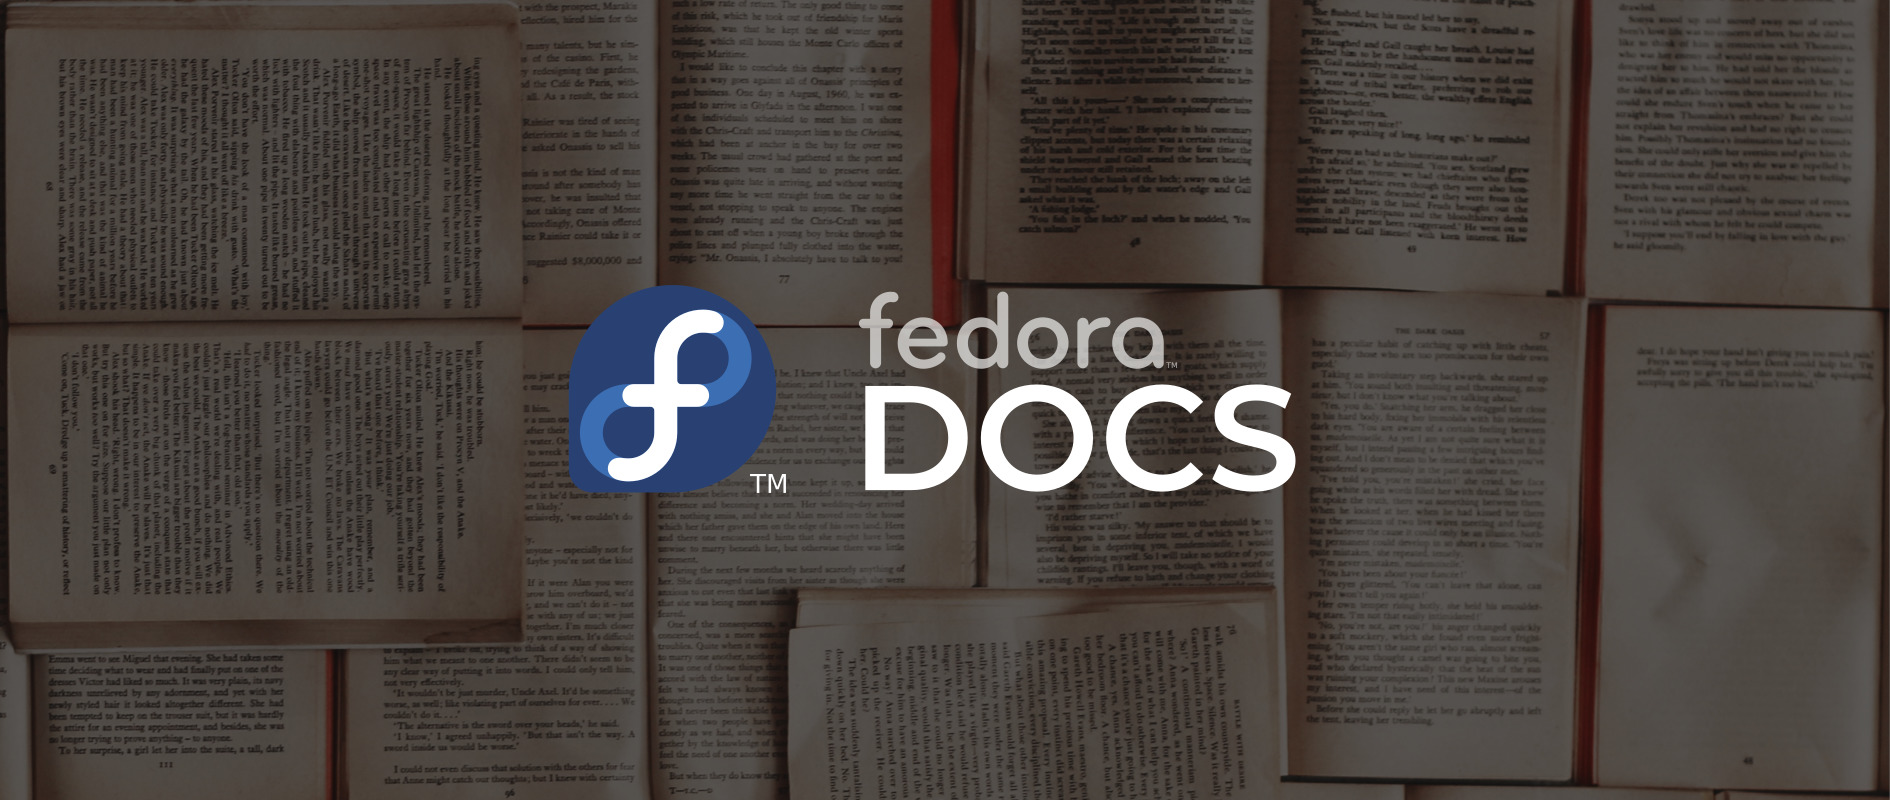 Logo de l’équipe de documentation de Fedora avec la marque Fedora ; pages du livre en arrière-plan.